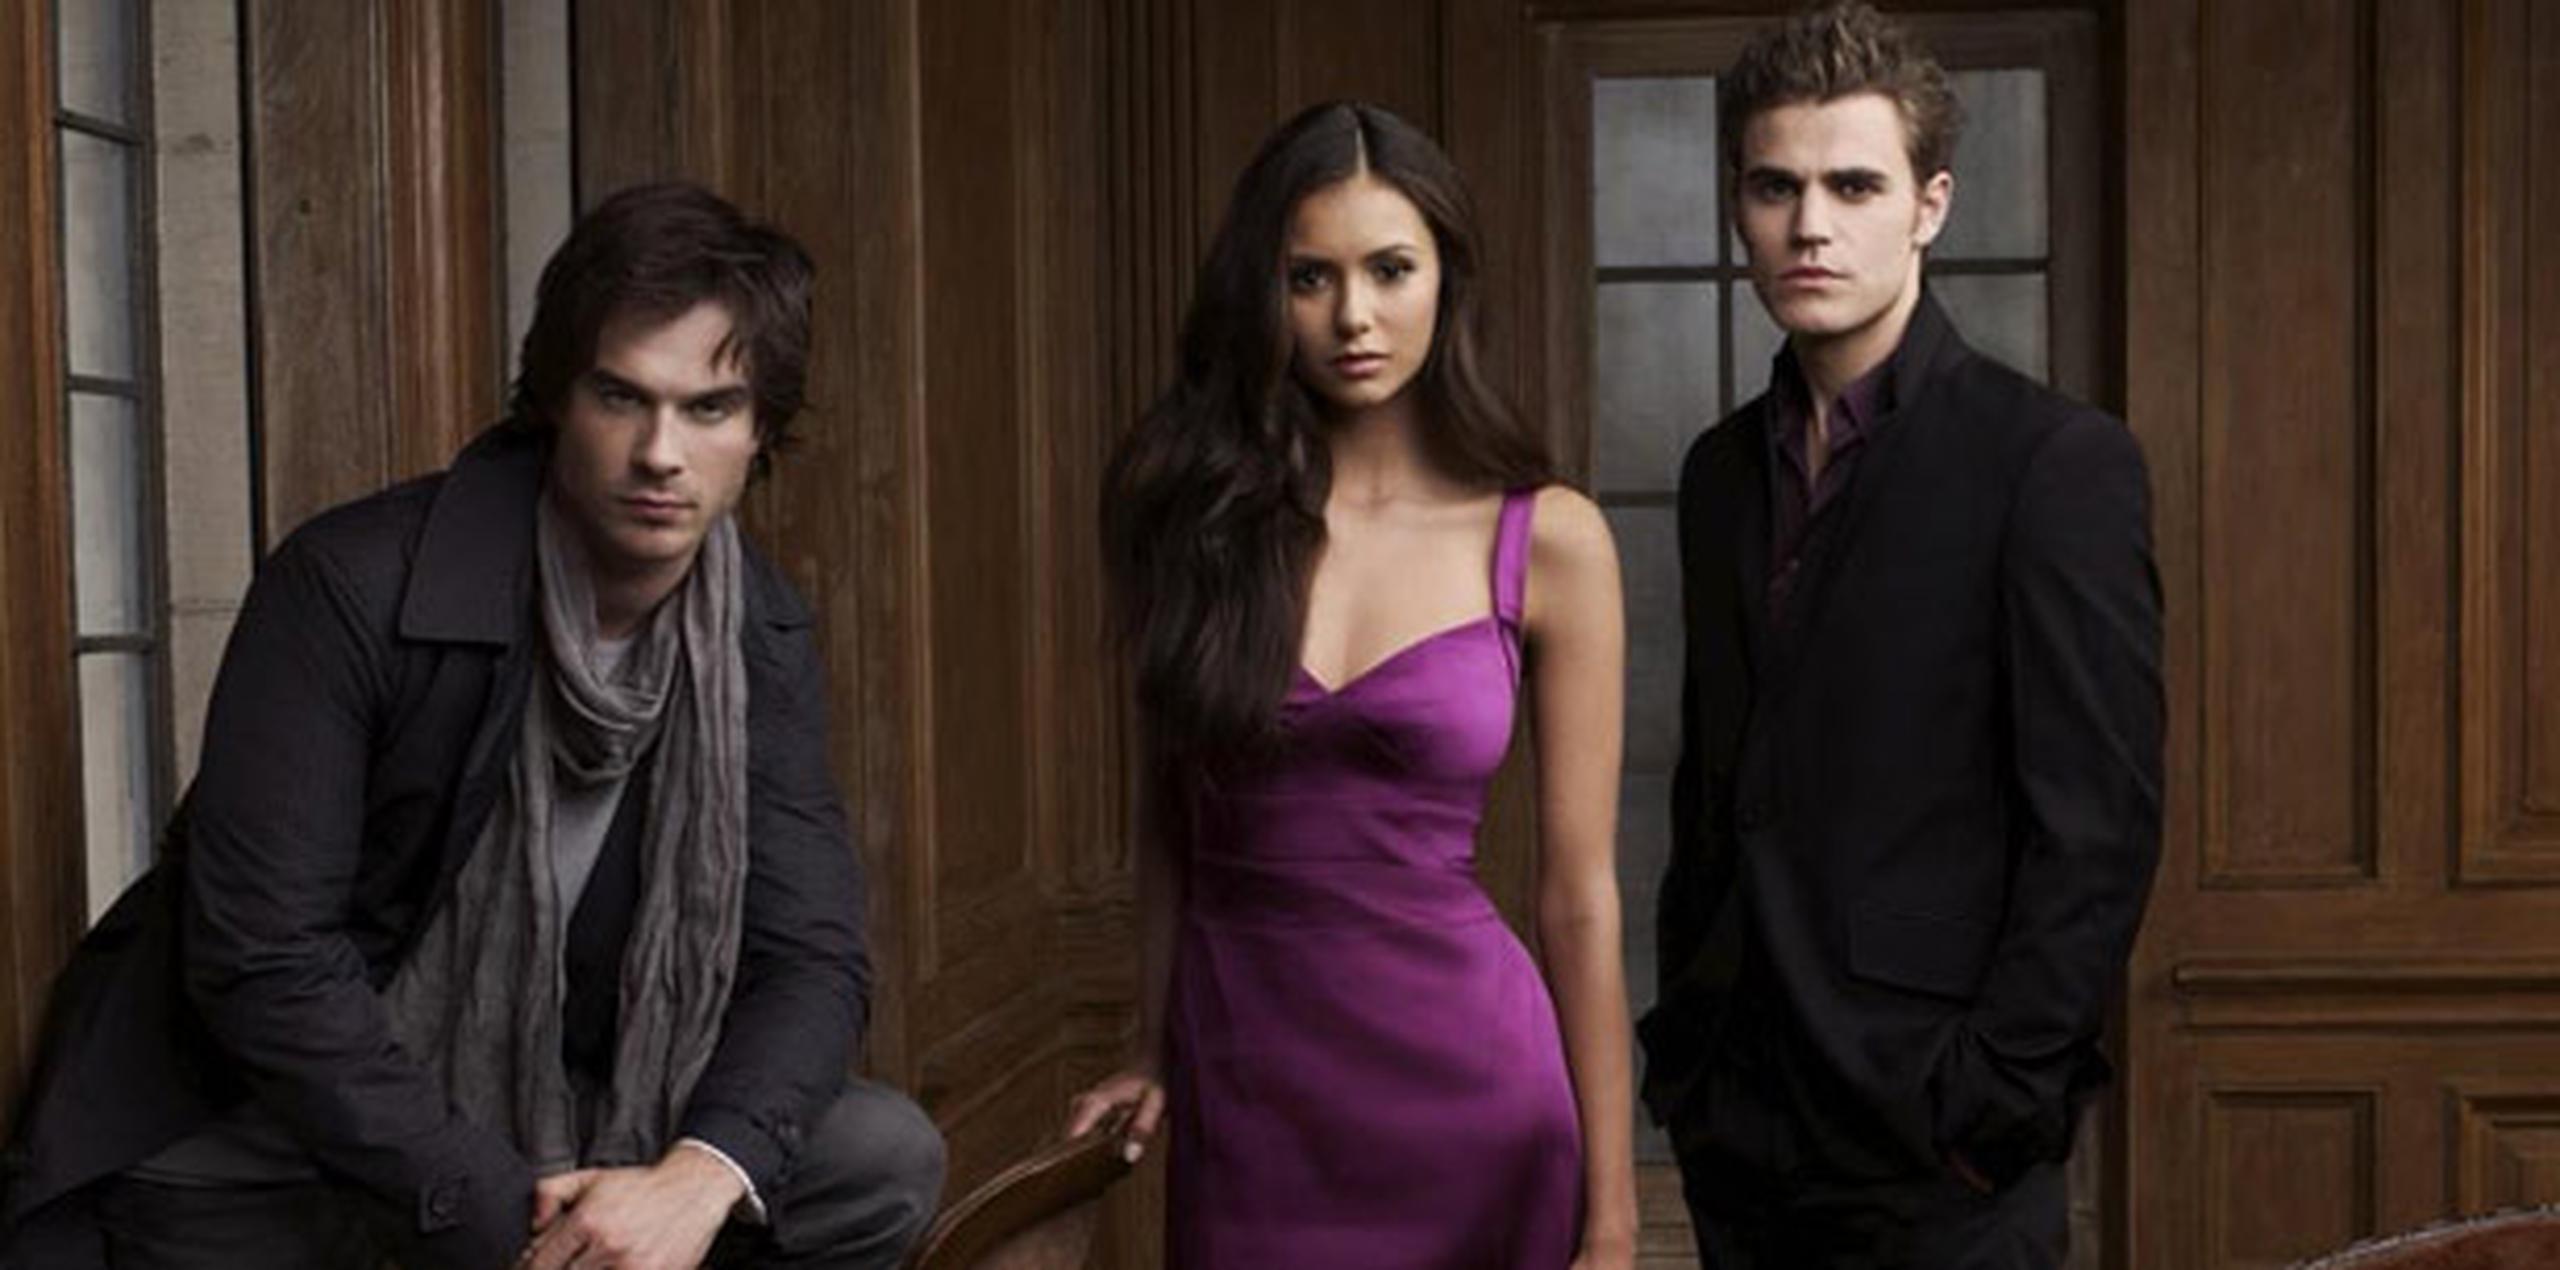 La presentación de la serie “The Vampire Diaries” será el sábado. (Suministrada)